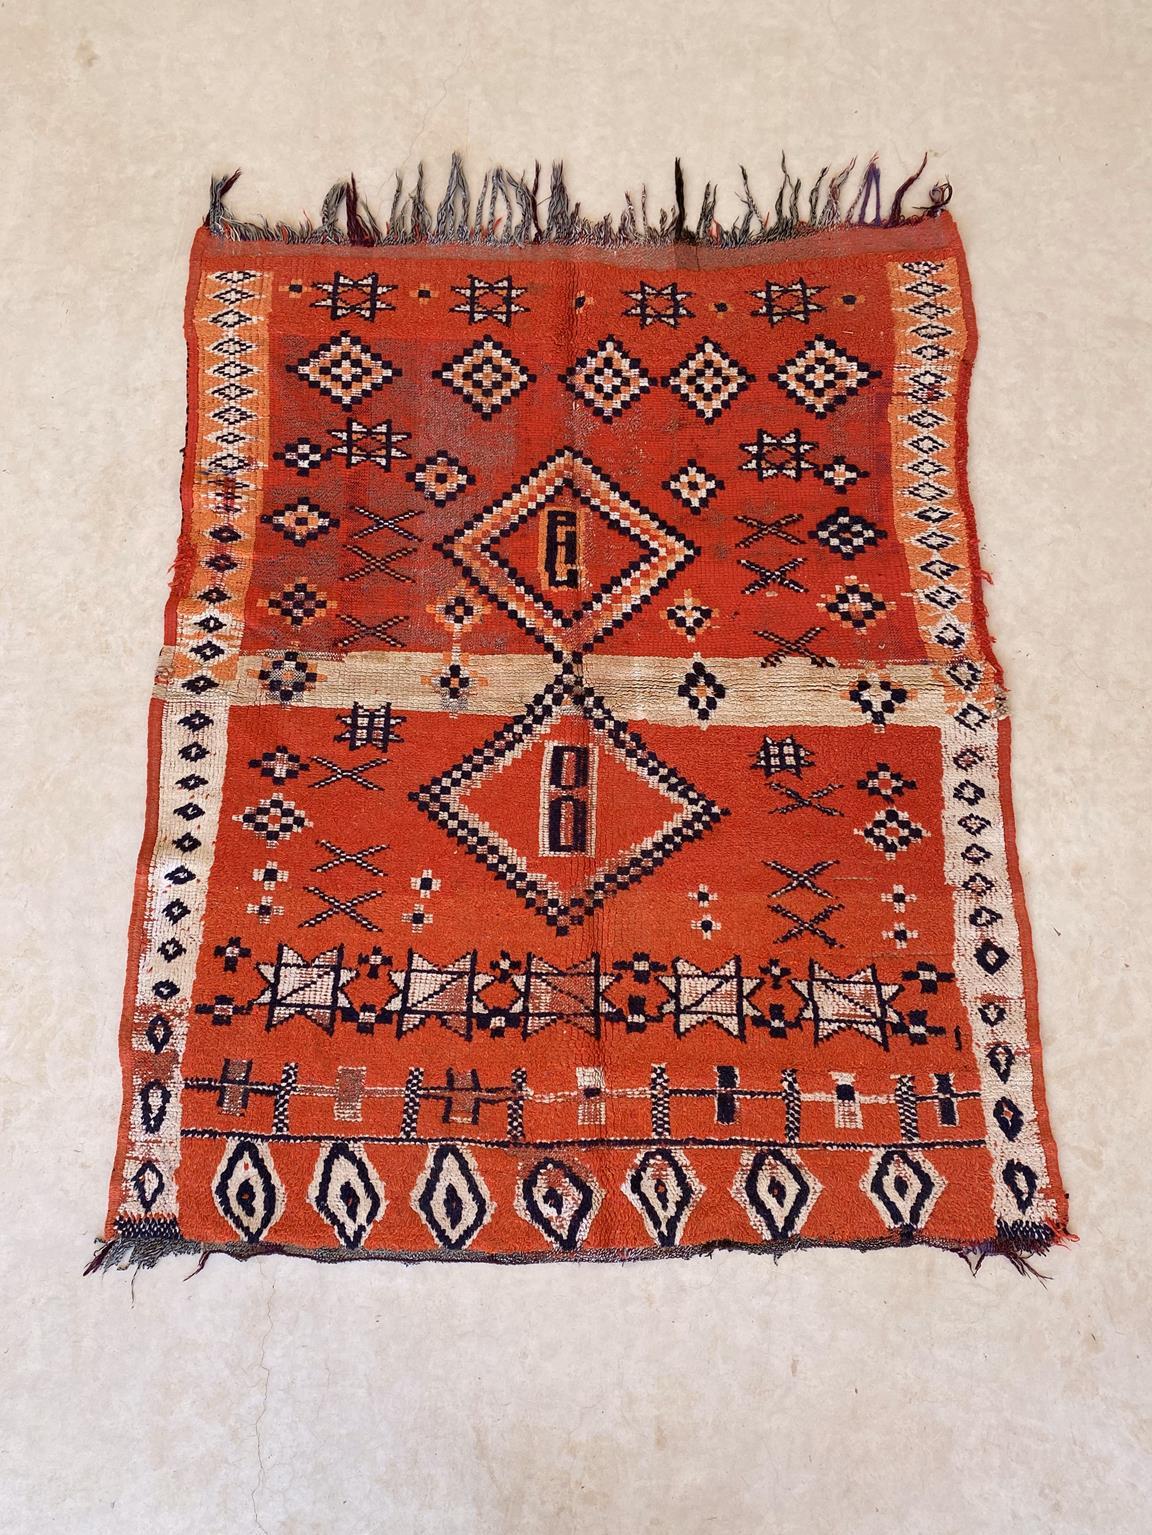 Wie schön ist das hier!! Dieser kleine Teppich wurde wahrscheinlich in der Gegend von Boujad, Mittlerer Atlas, Marokko, hergestellt. Die Hauptfarbe ist ein leuchtendes Rot, und der Teppich scheint in zwei gleiche Teile geteilt zu sein, die durch